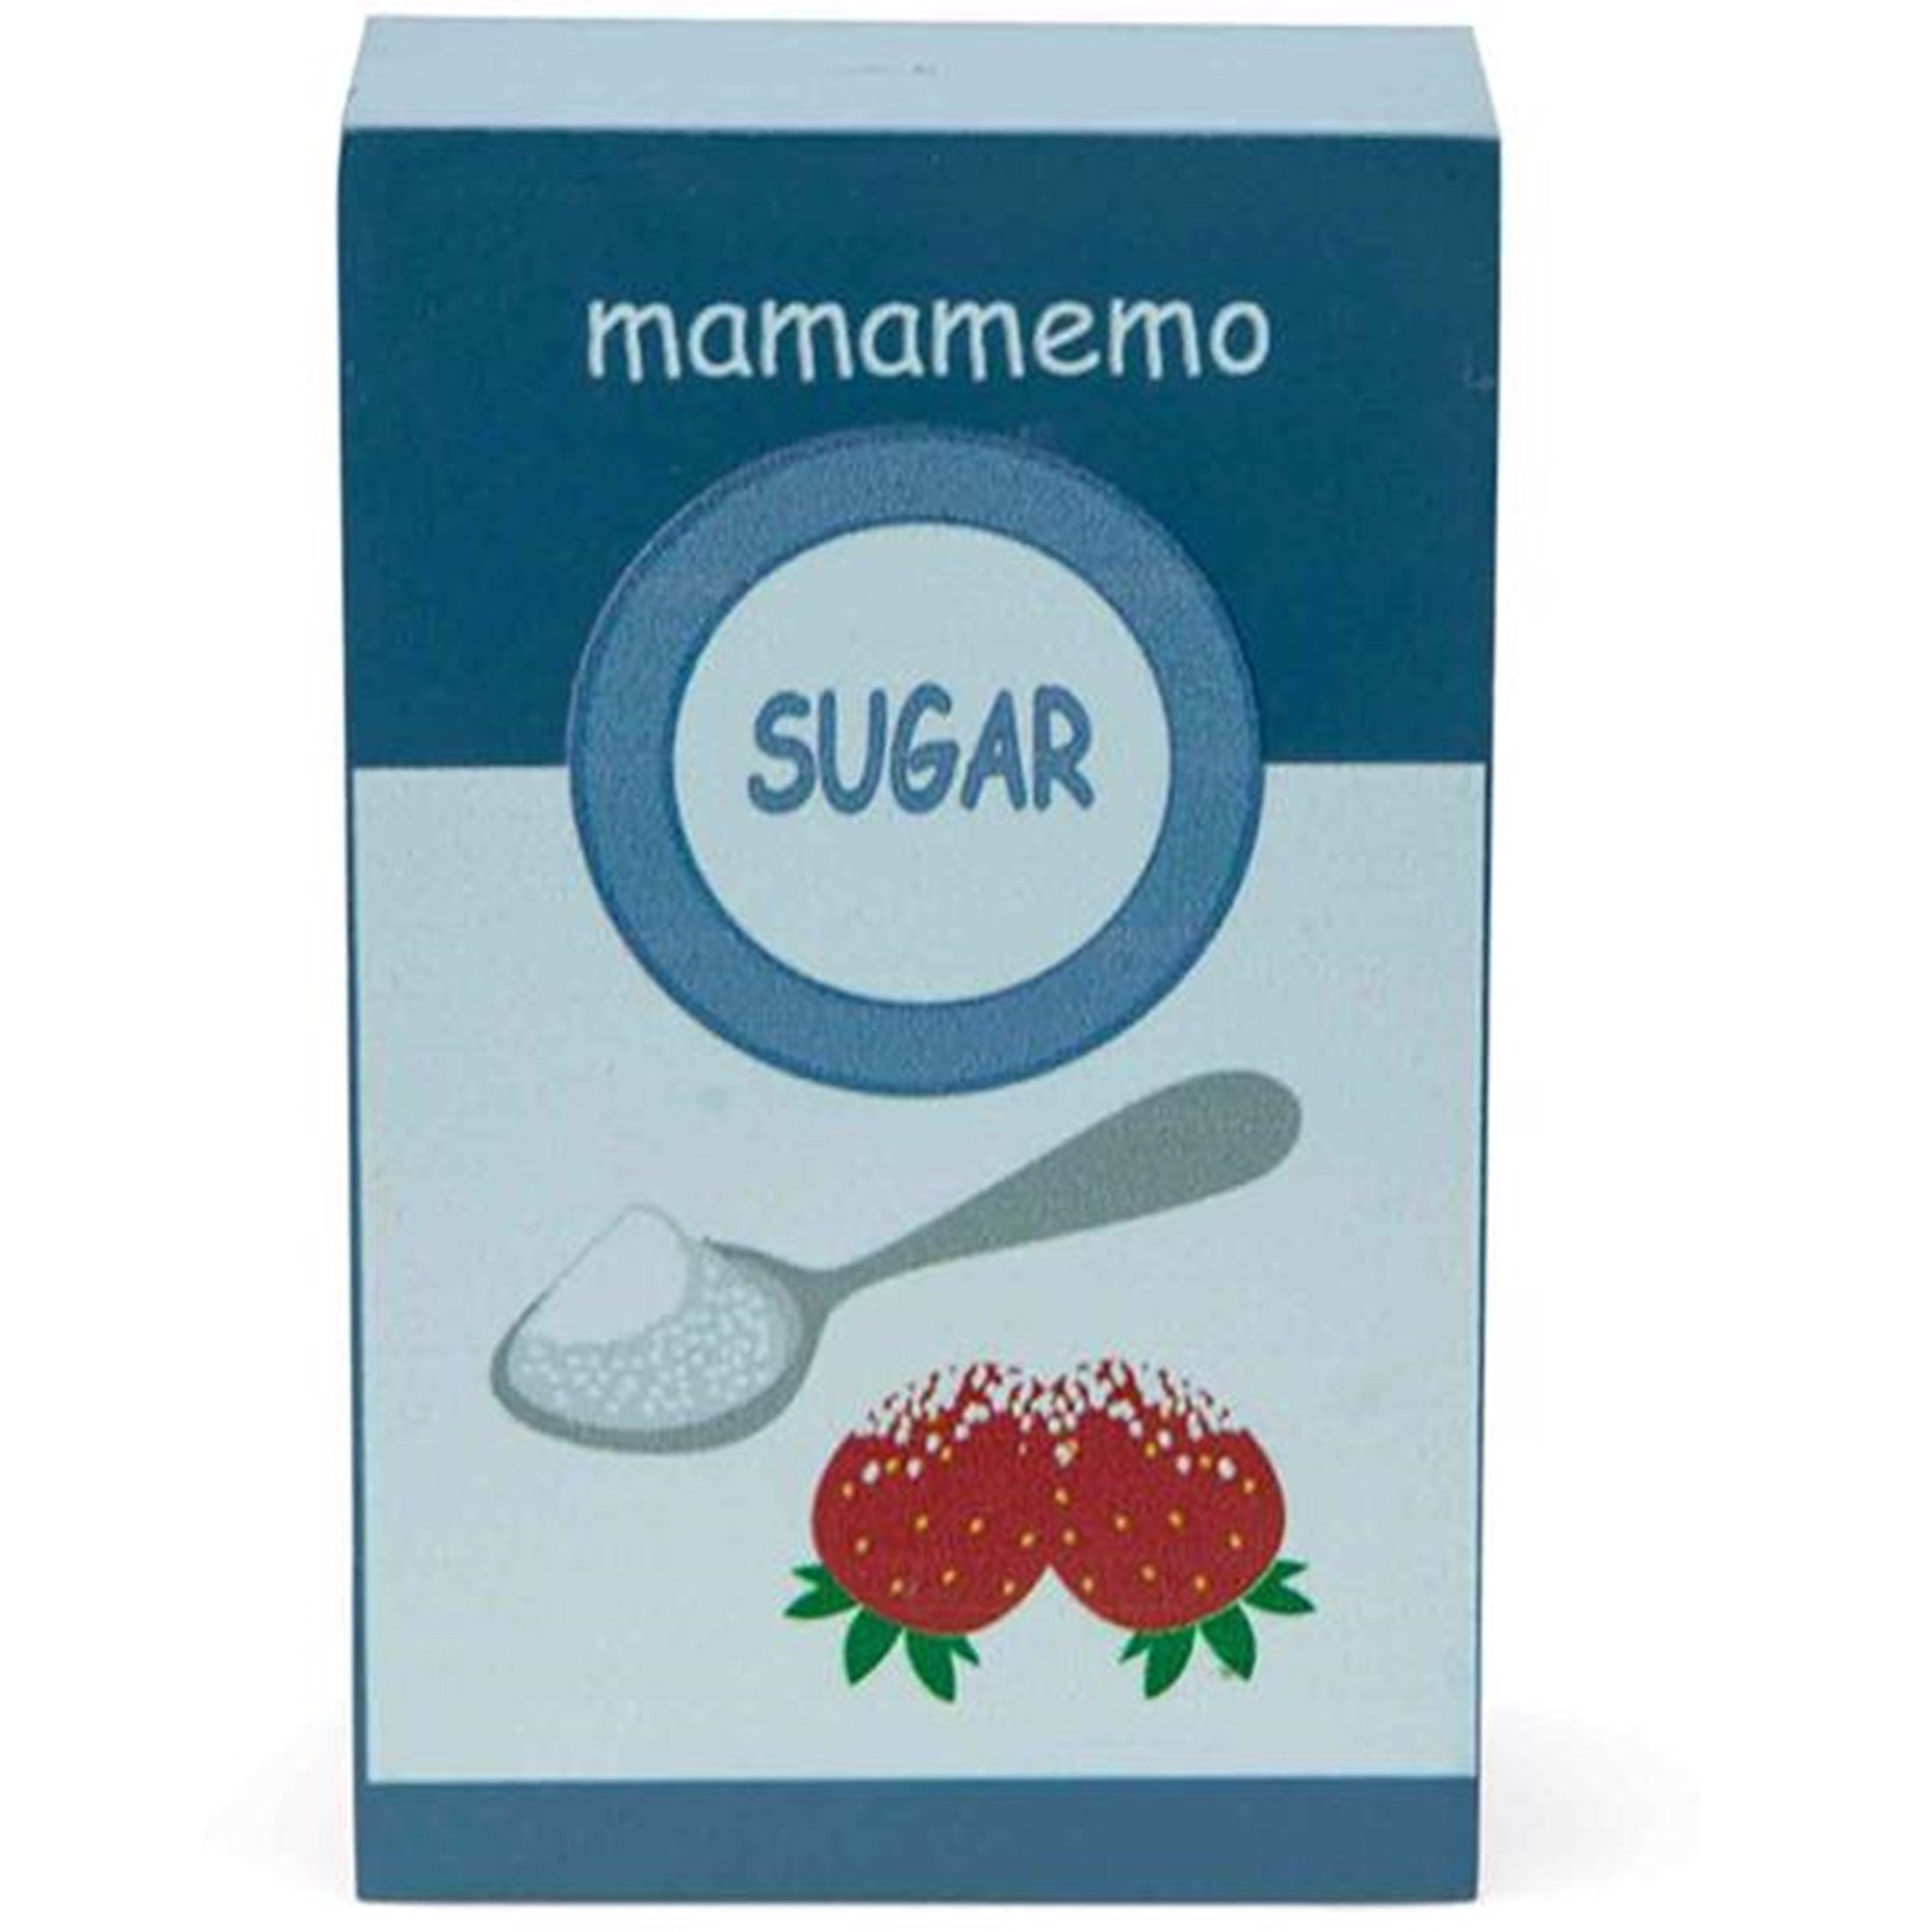 MaMaMemo Sugar